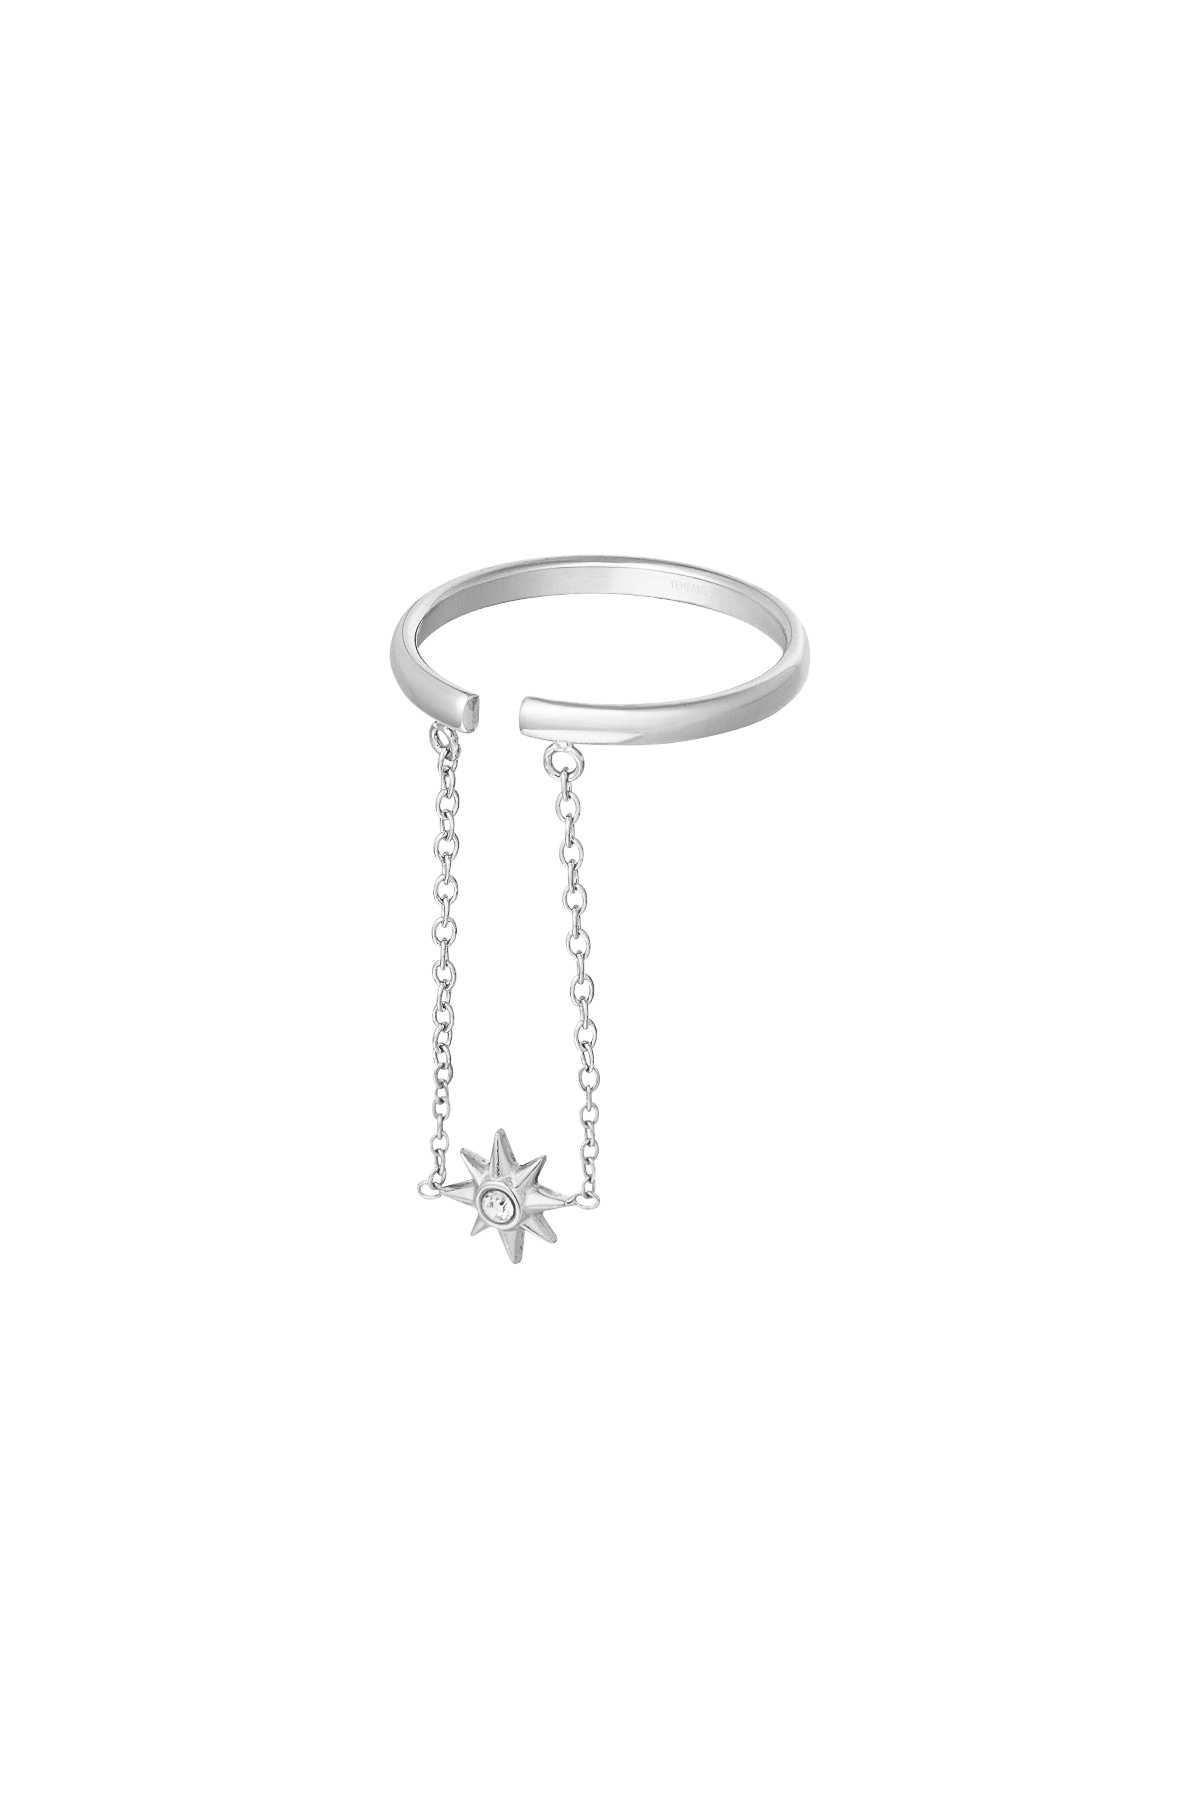 Anello stella con catena - argento